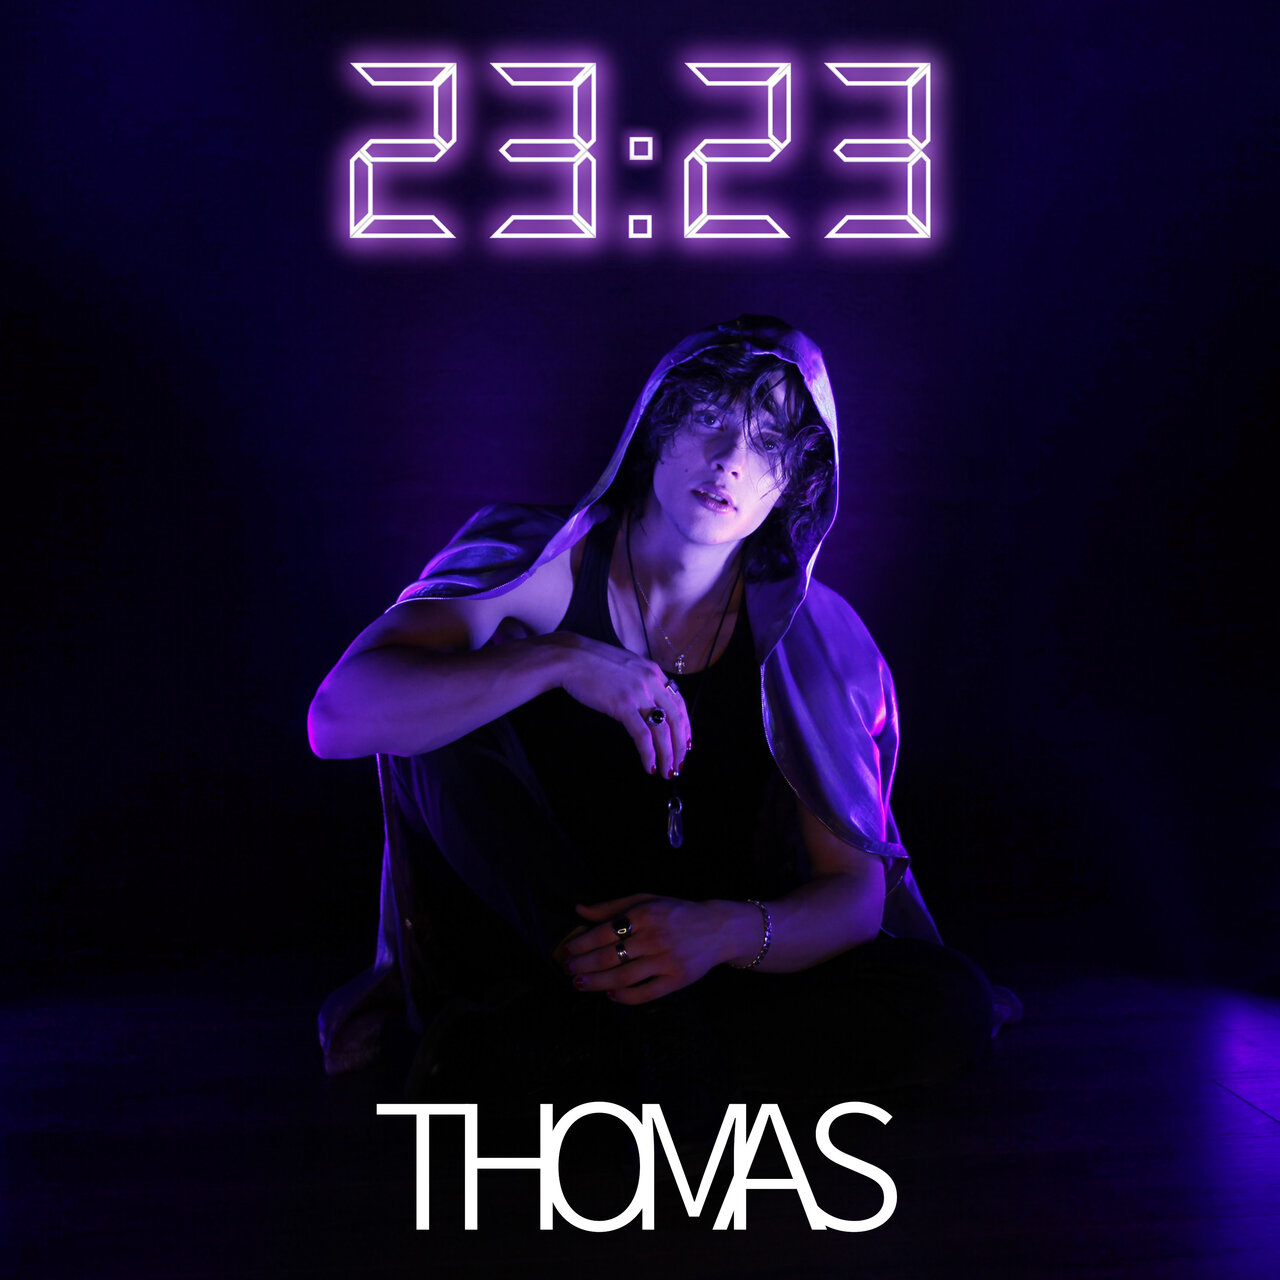 Thomas — 23:23 cover artwork